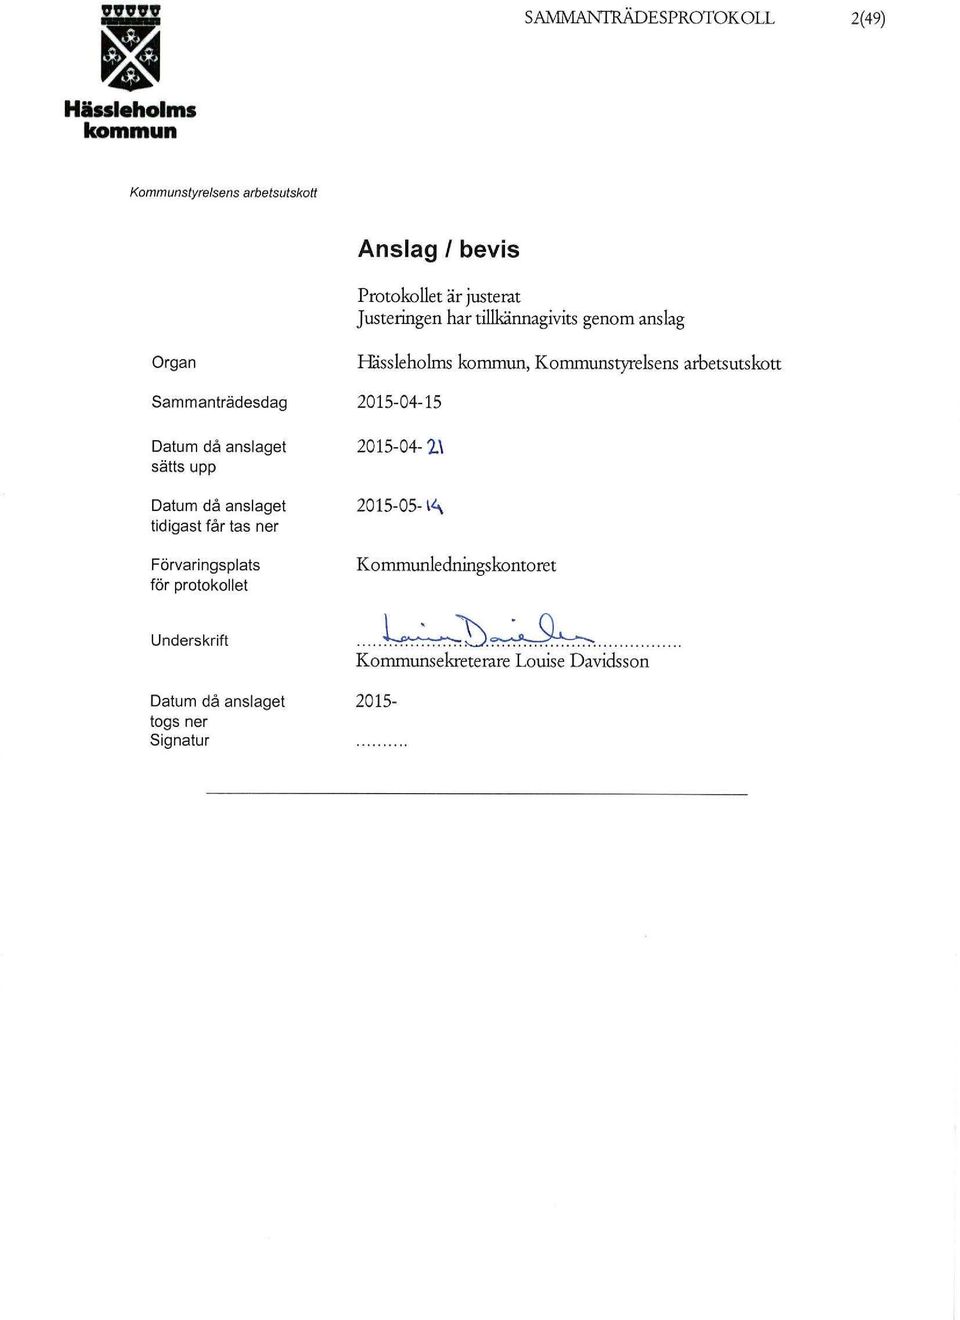 Förvaringsplats för protokollet Underskrift Datum då anslaget togs ner Signatur Håssieholms,